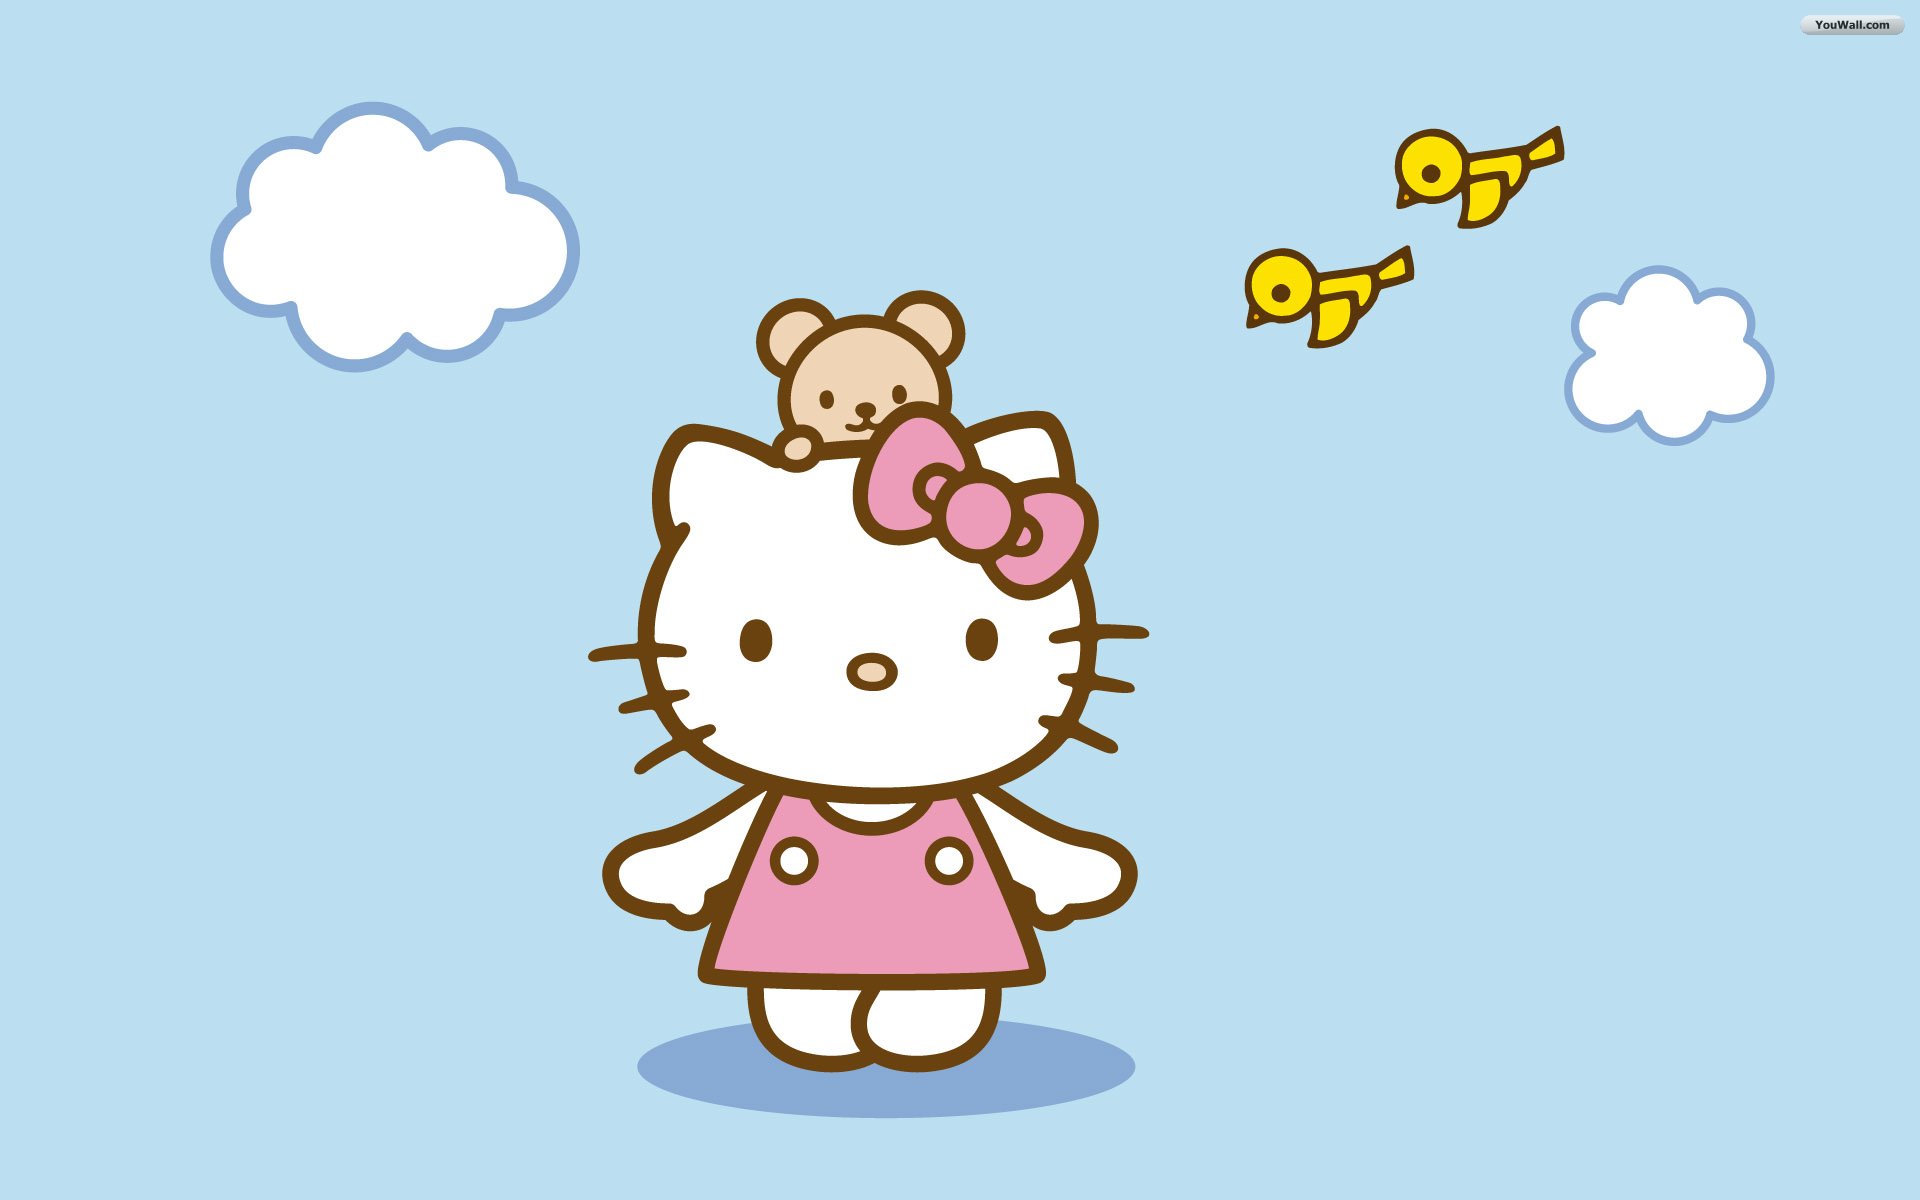 Youwall Hello Kitty Wallpaper